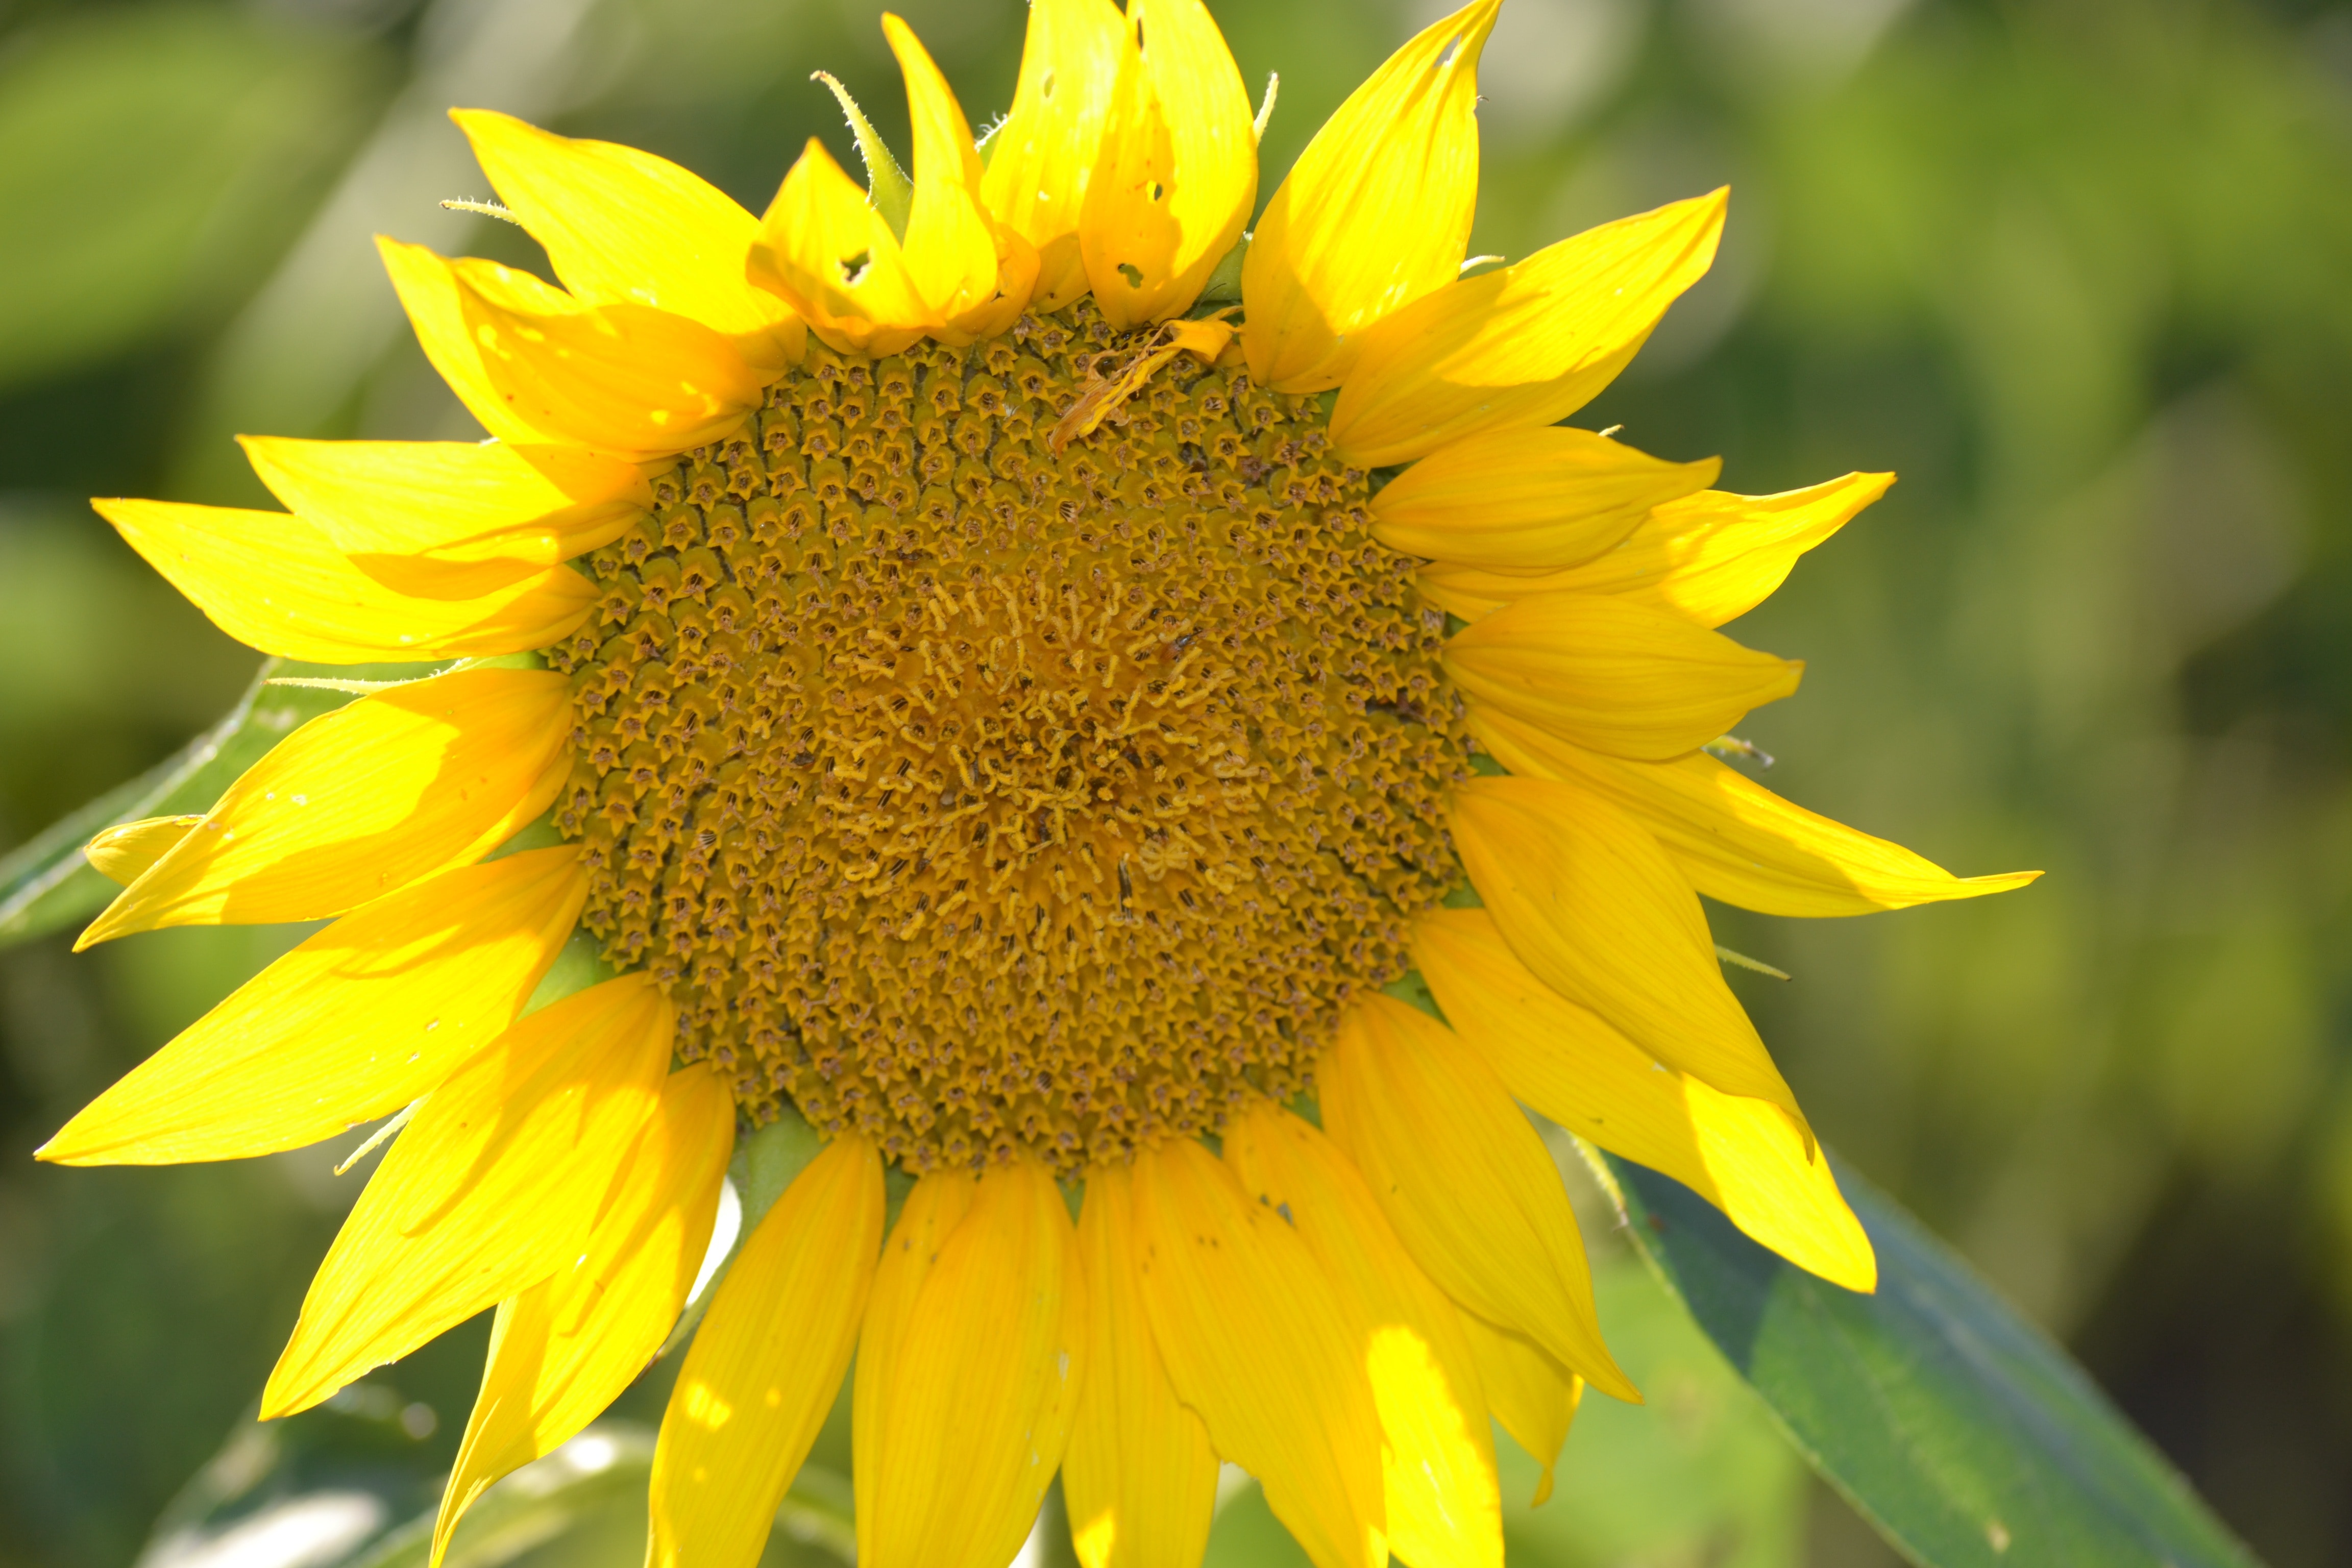 ywllow sunflower